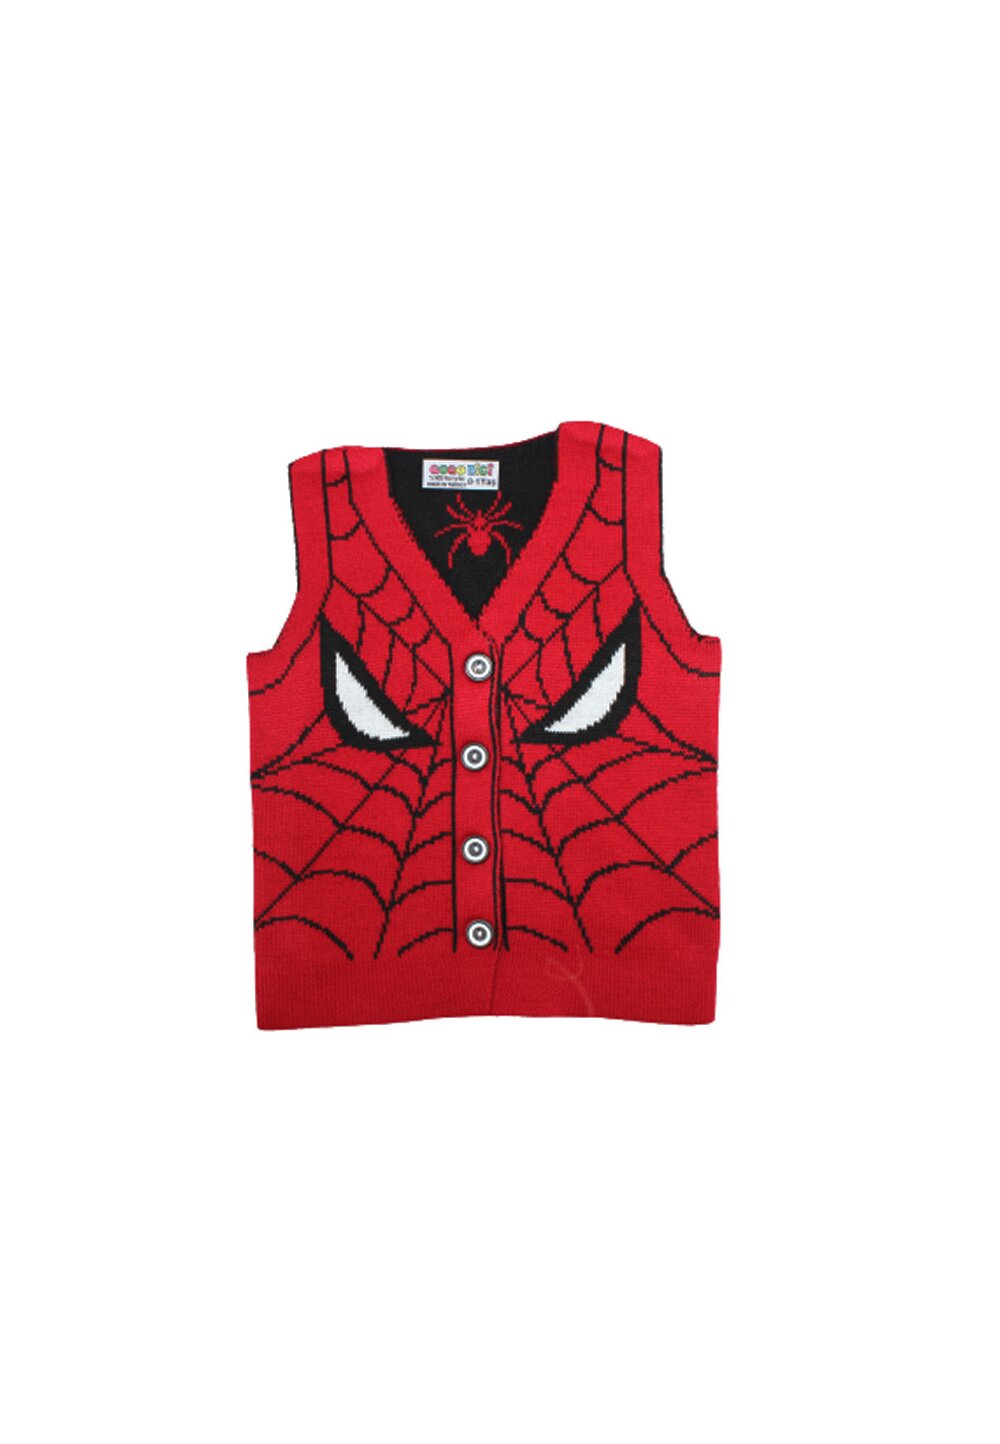 Vesta tricotata, Spider Man, rosu cu negru Prichindel